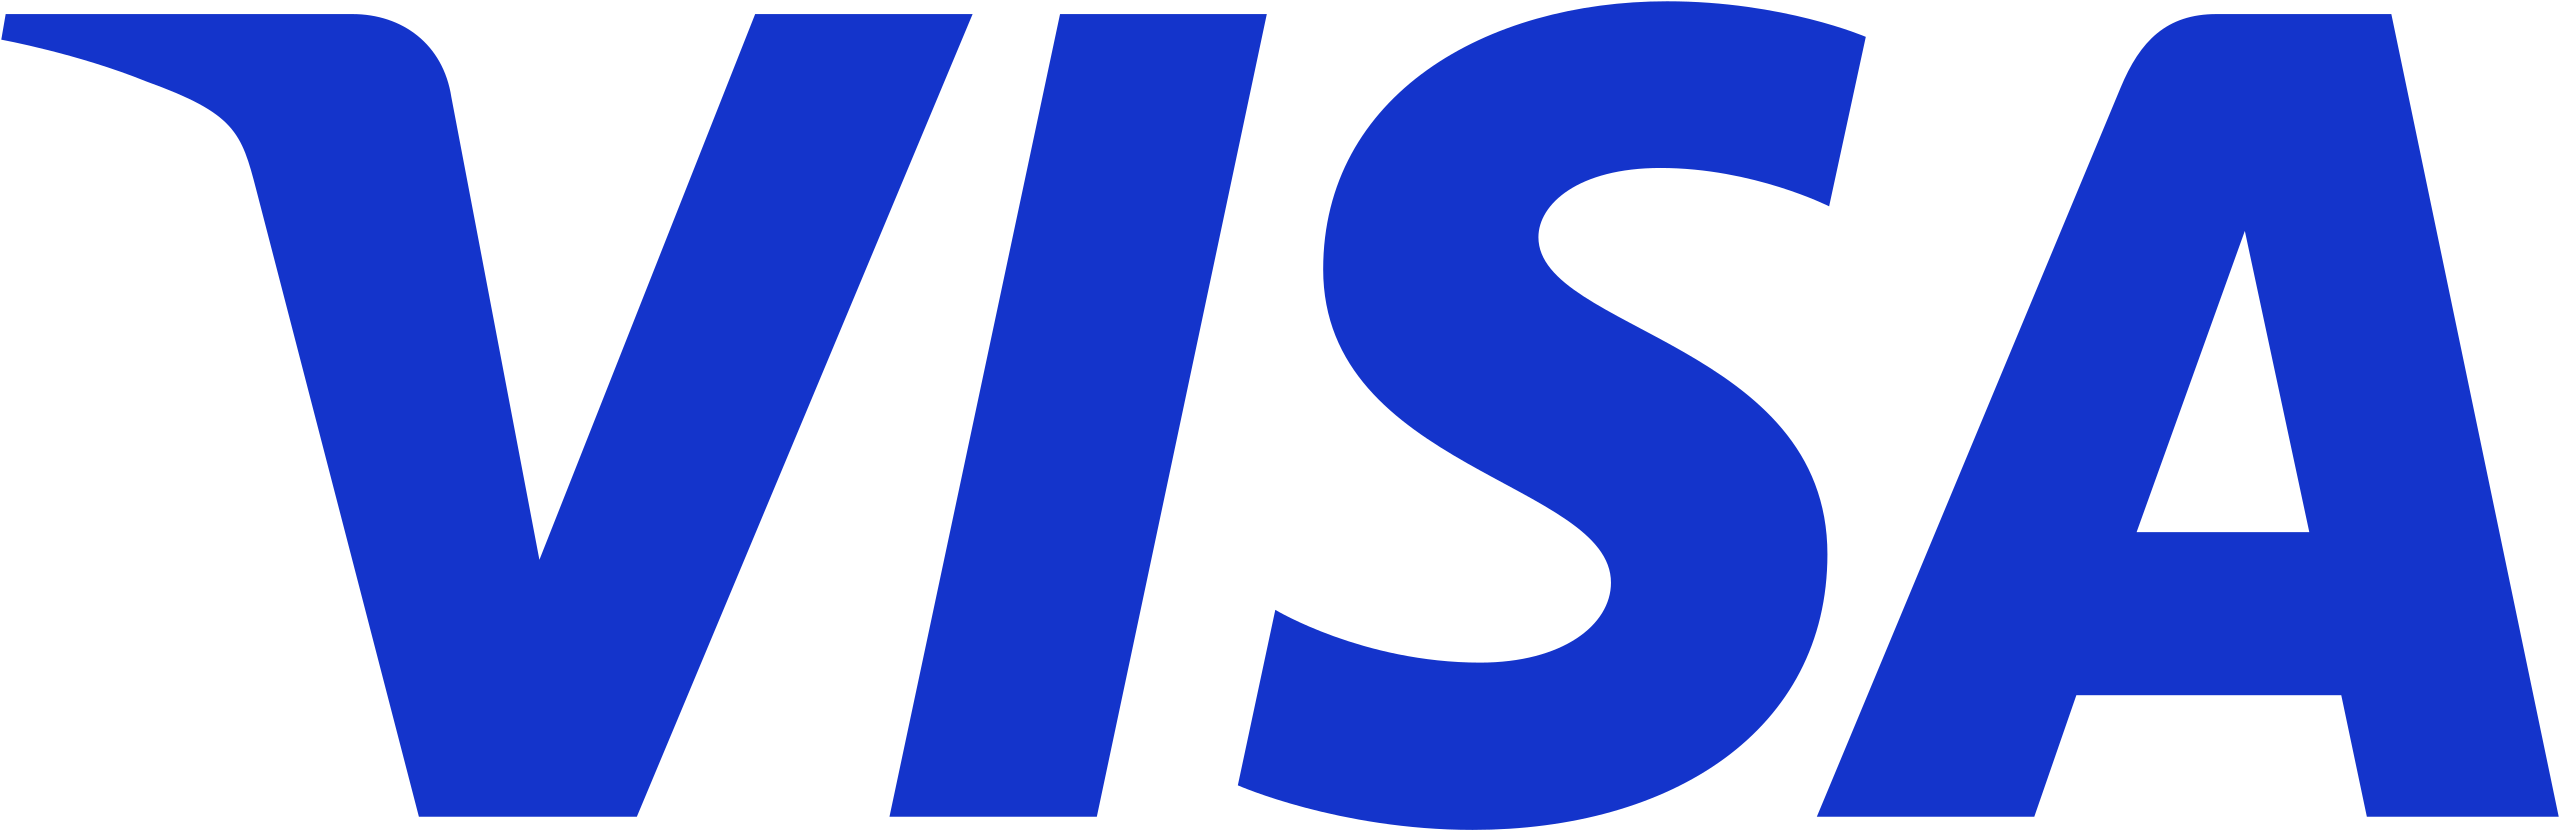 Виза логотип